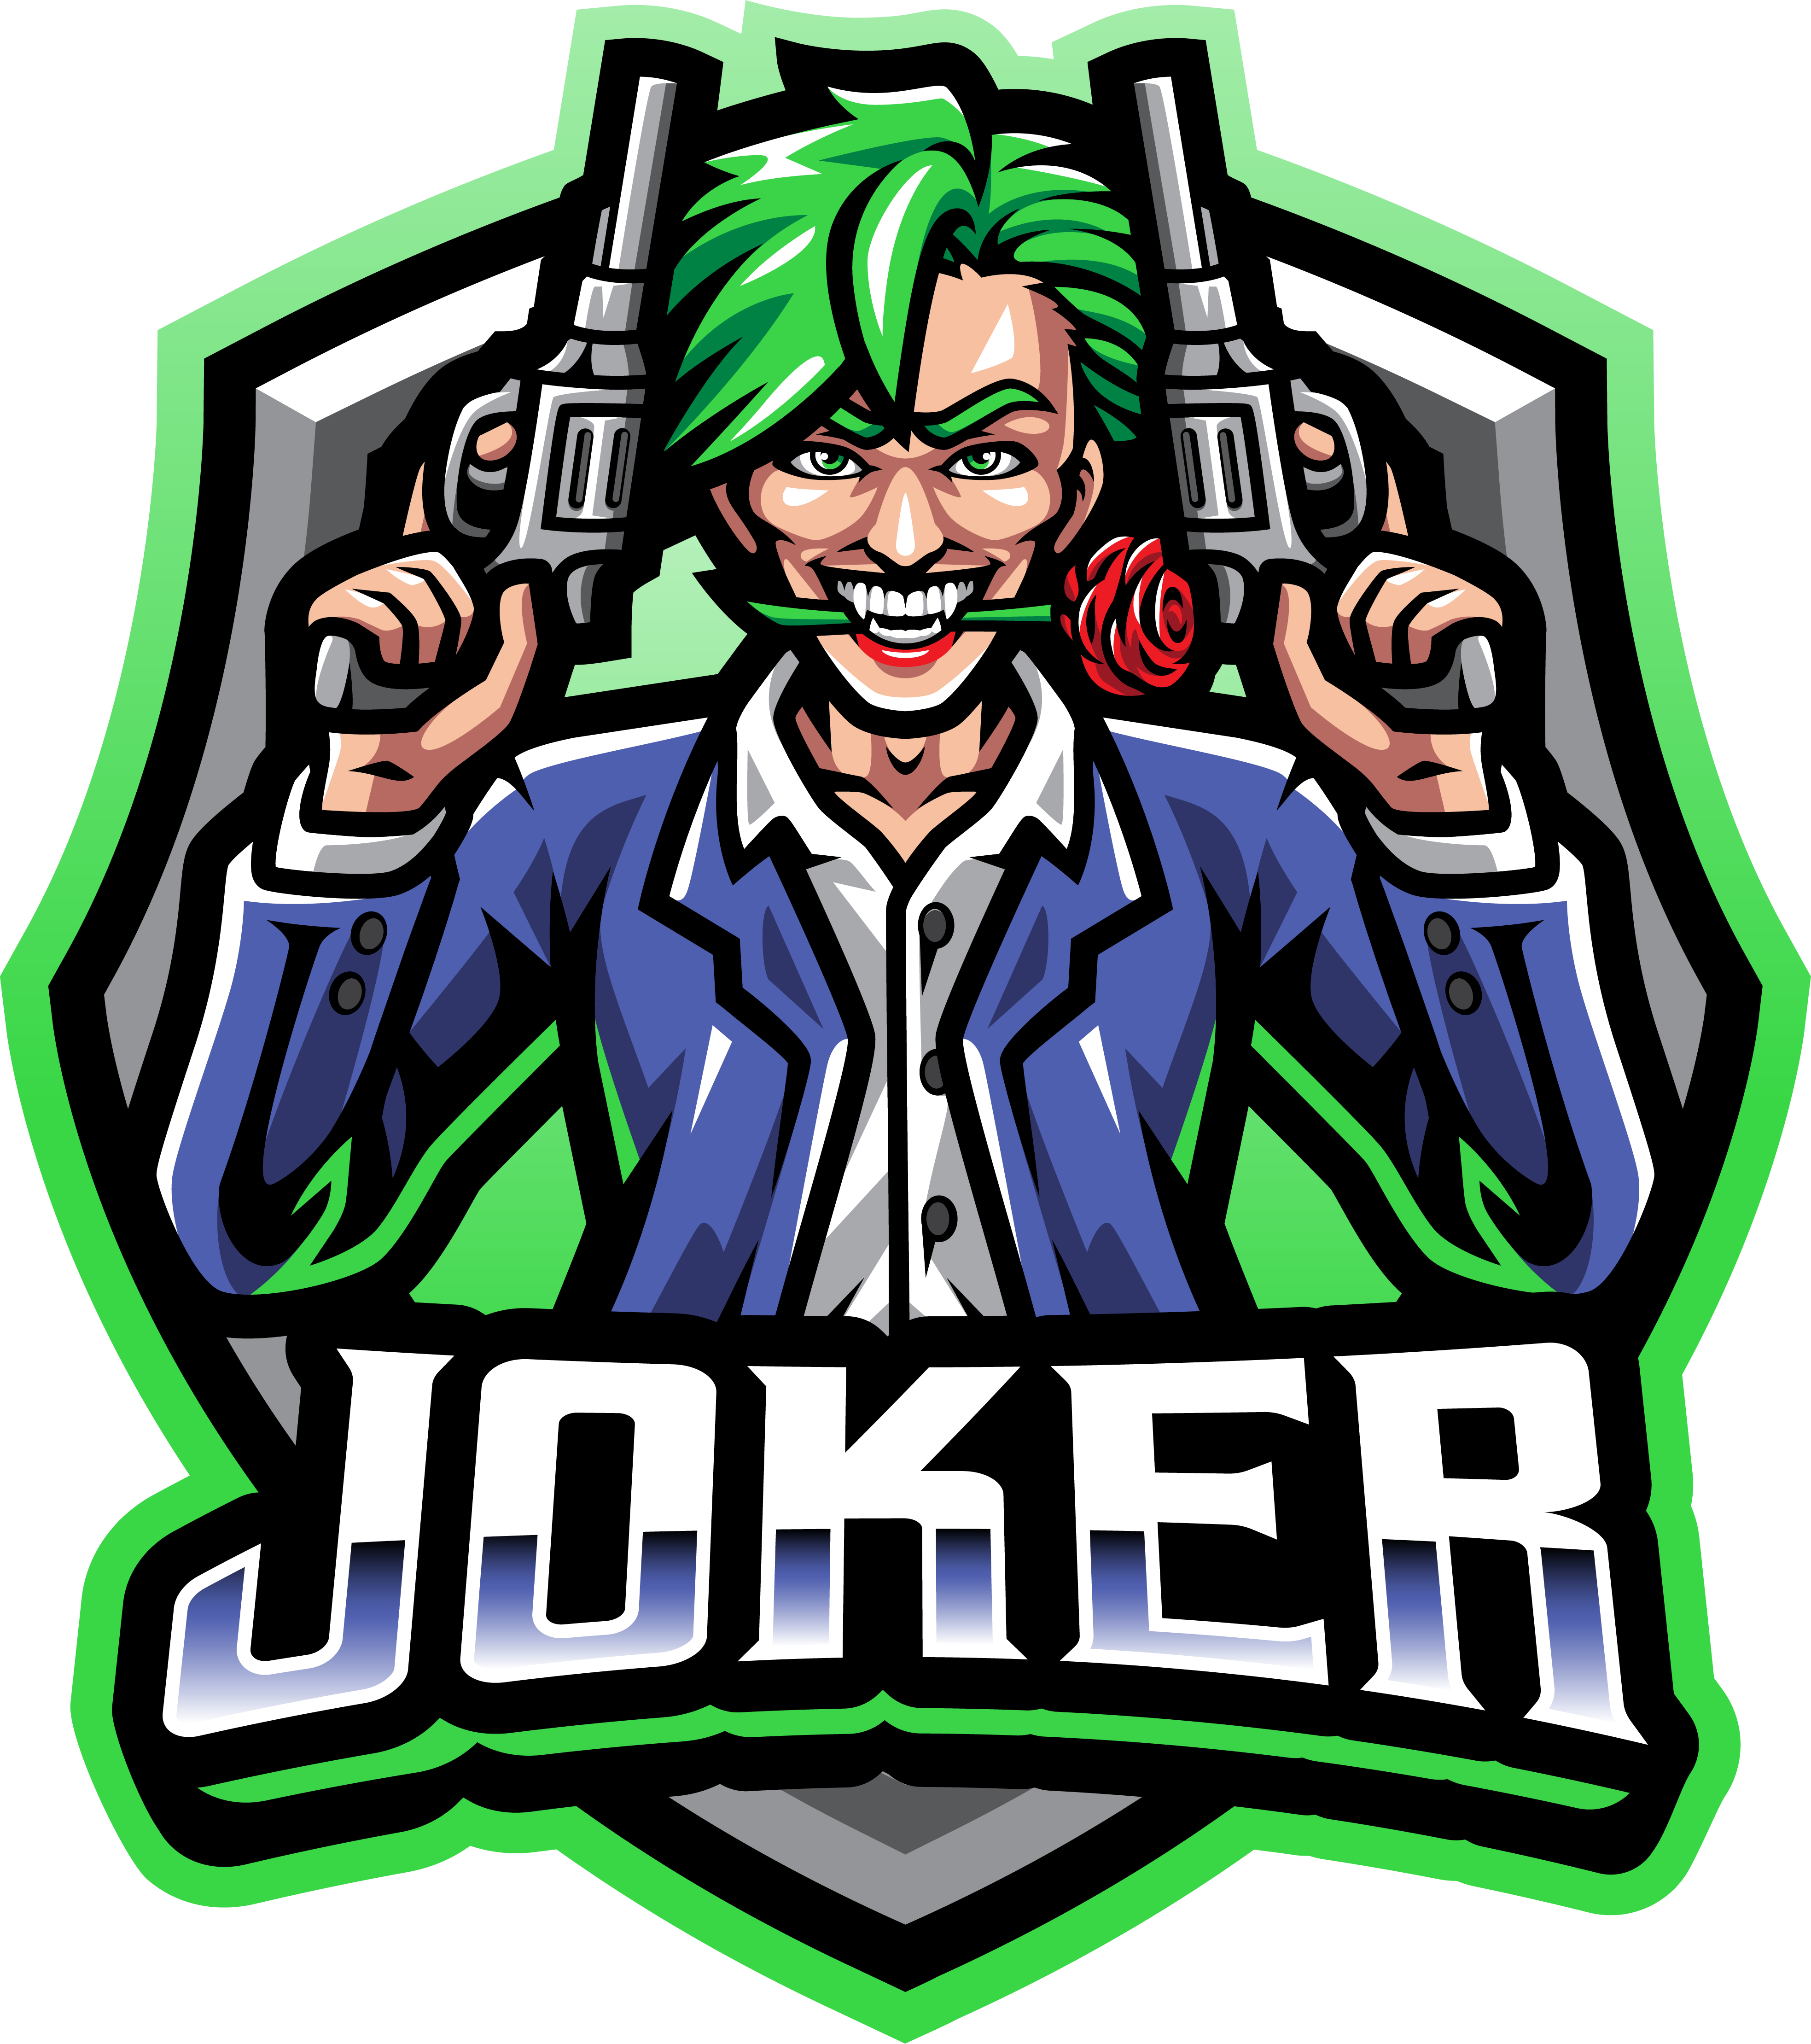 Joker gunner esport mascot logo design By Visink | TheHungryJPEG